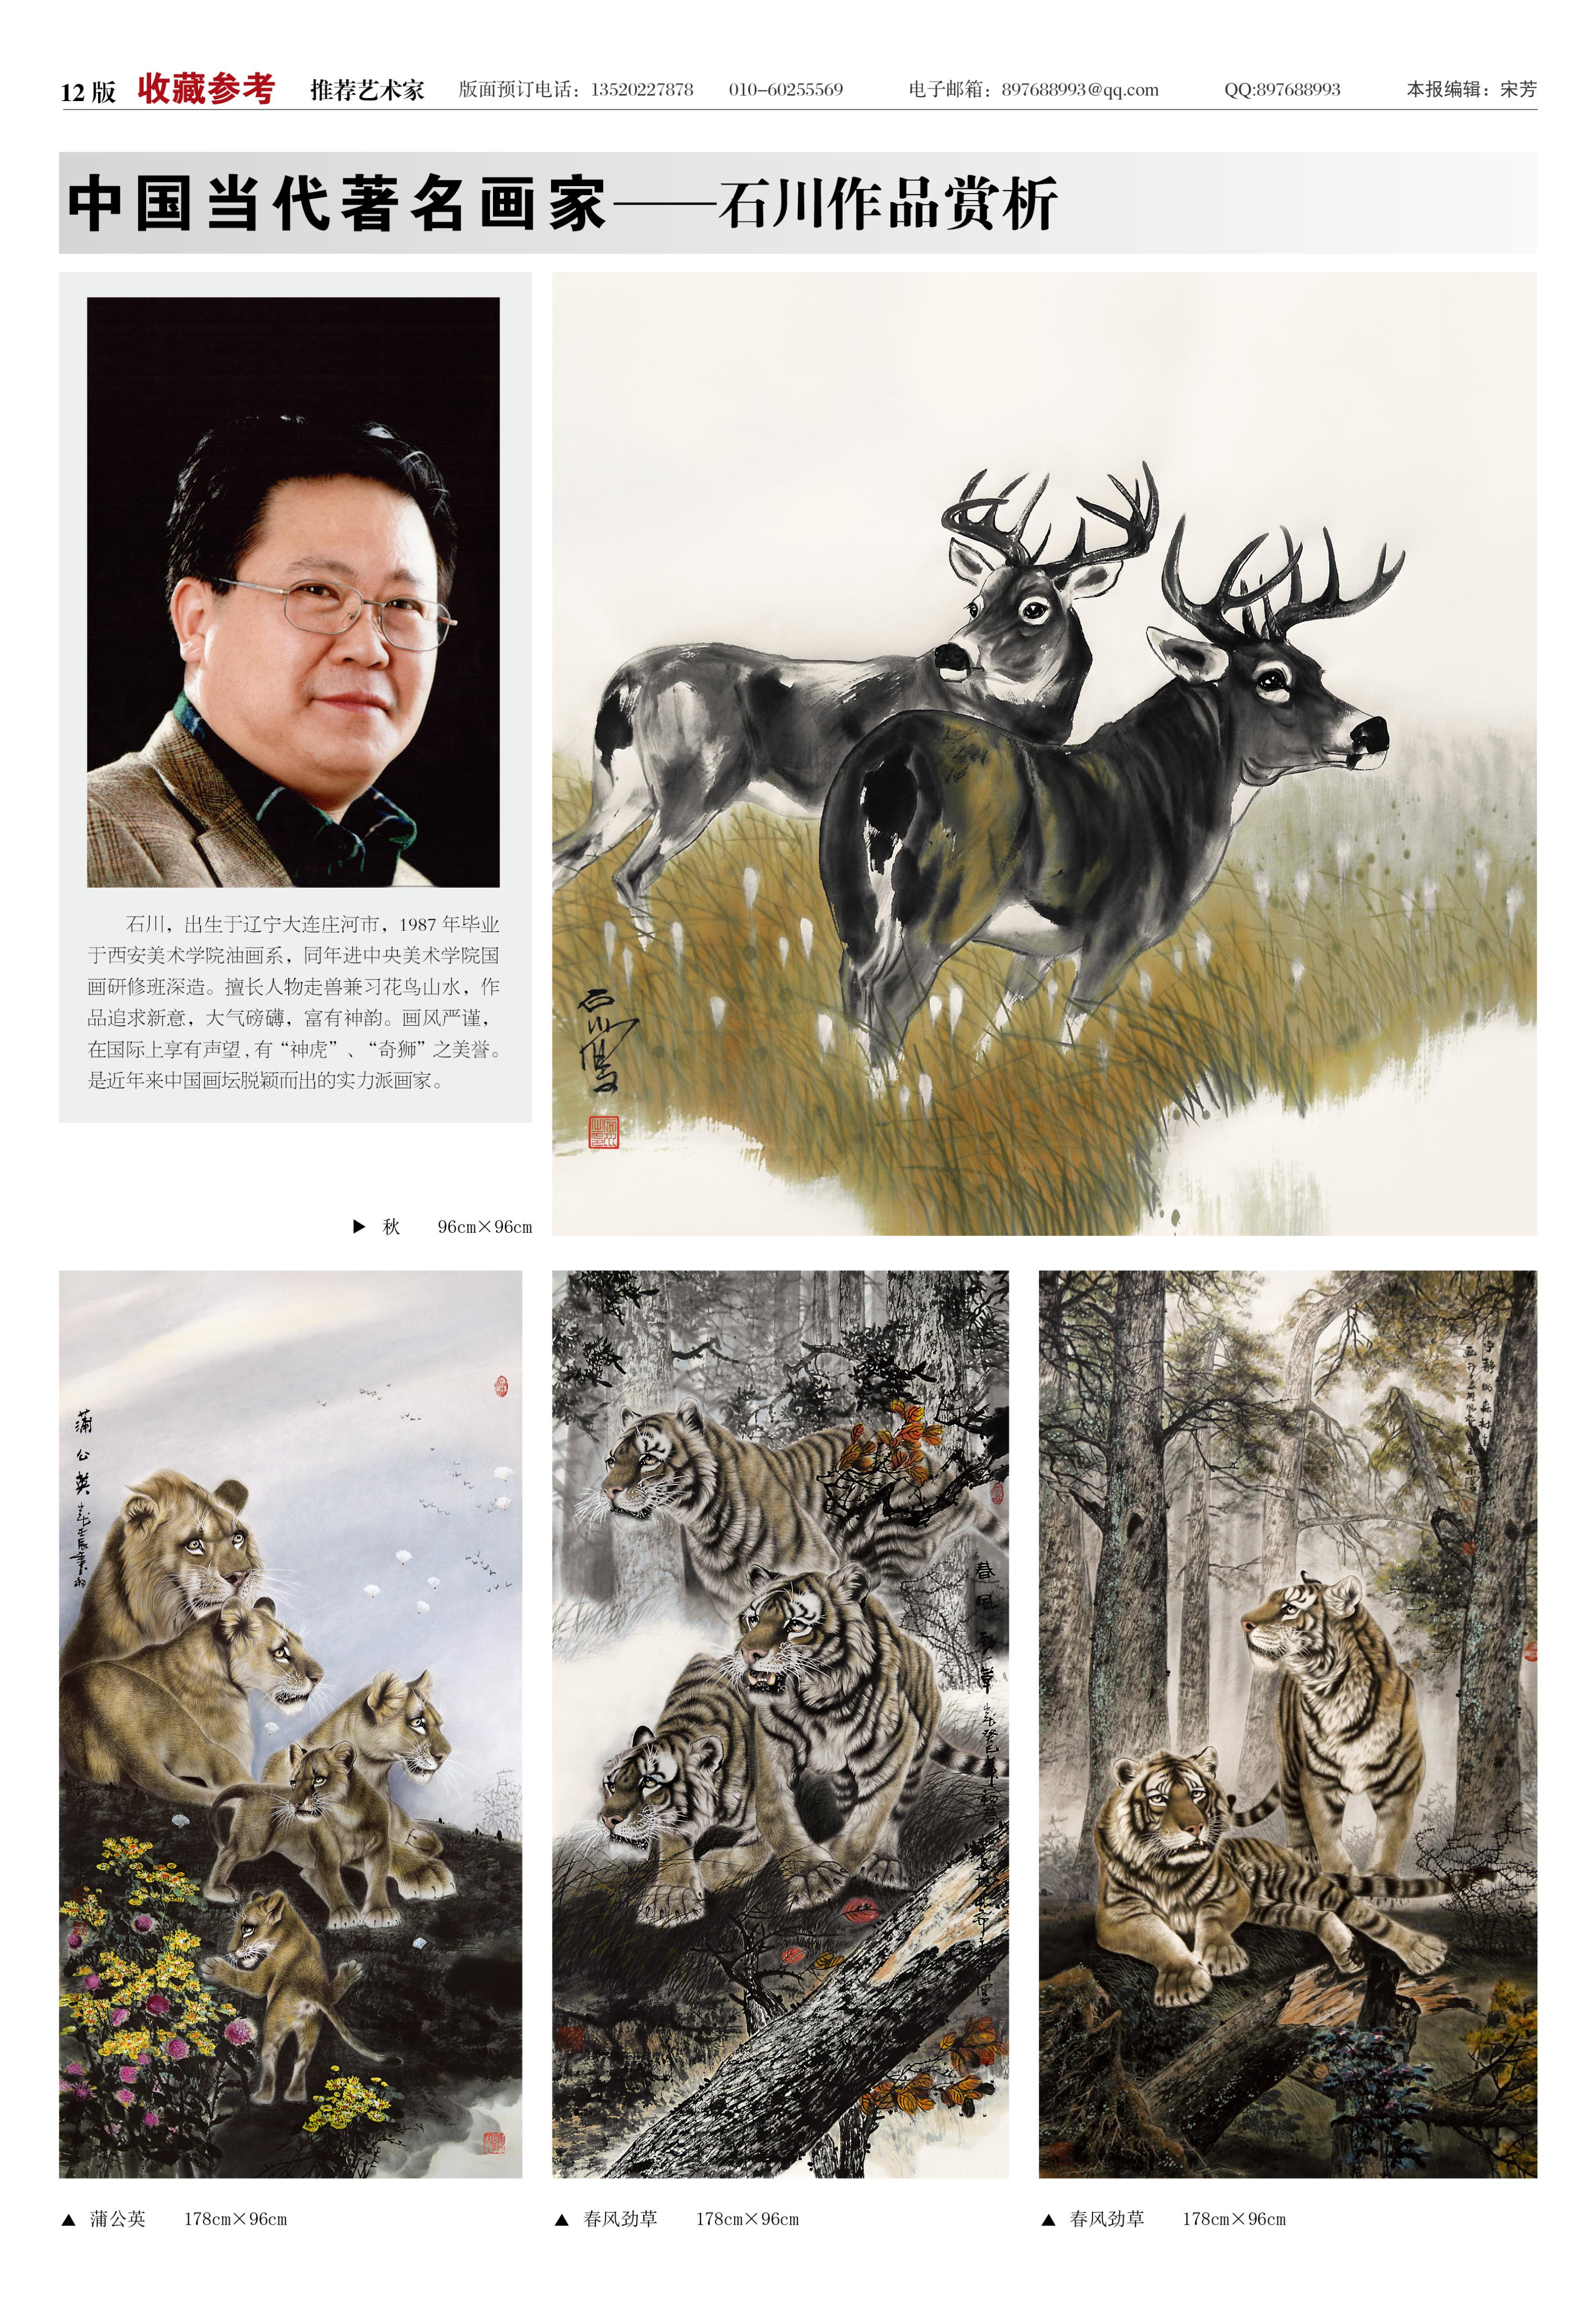 12版:中国当代著名画家——石川作品赏析